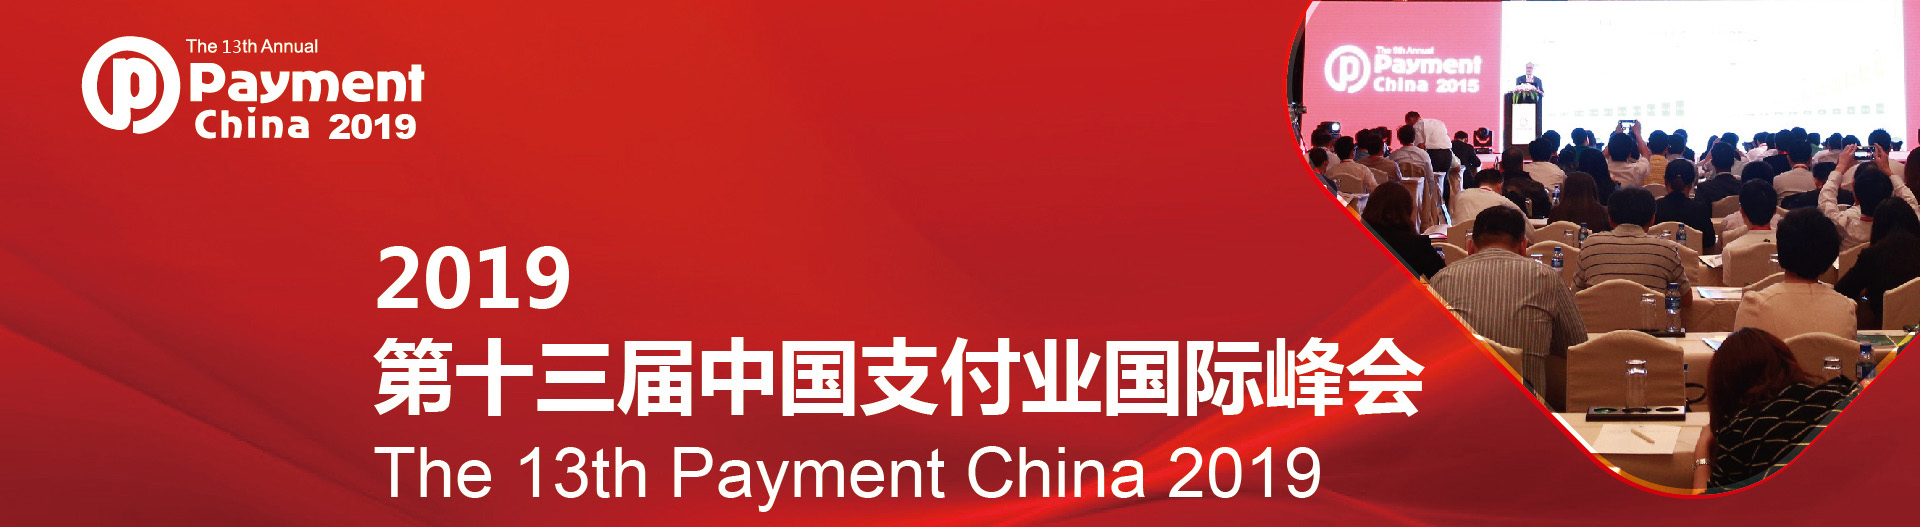 众望受邀第十三届中国支付业国际峰会IIFAA身份认证助力行业新发展